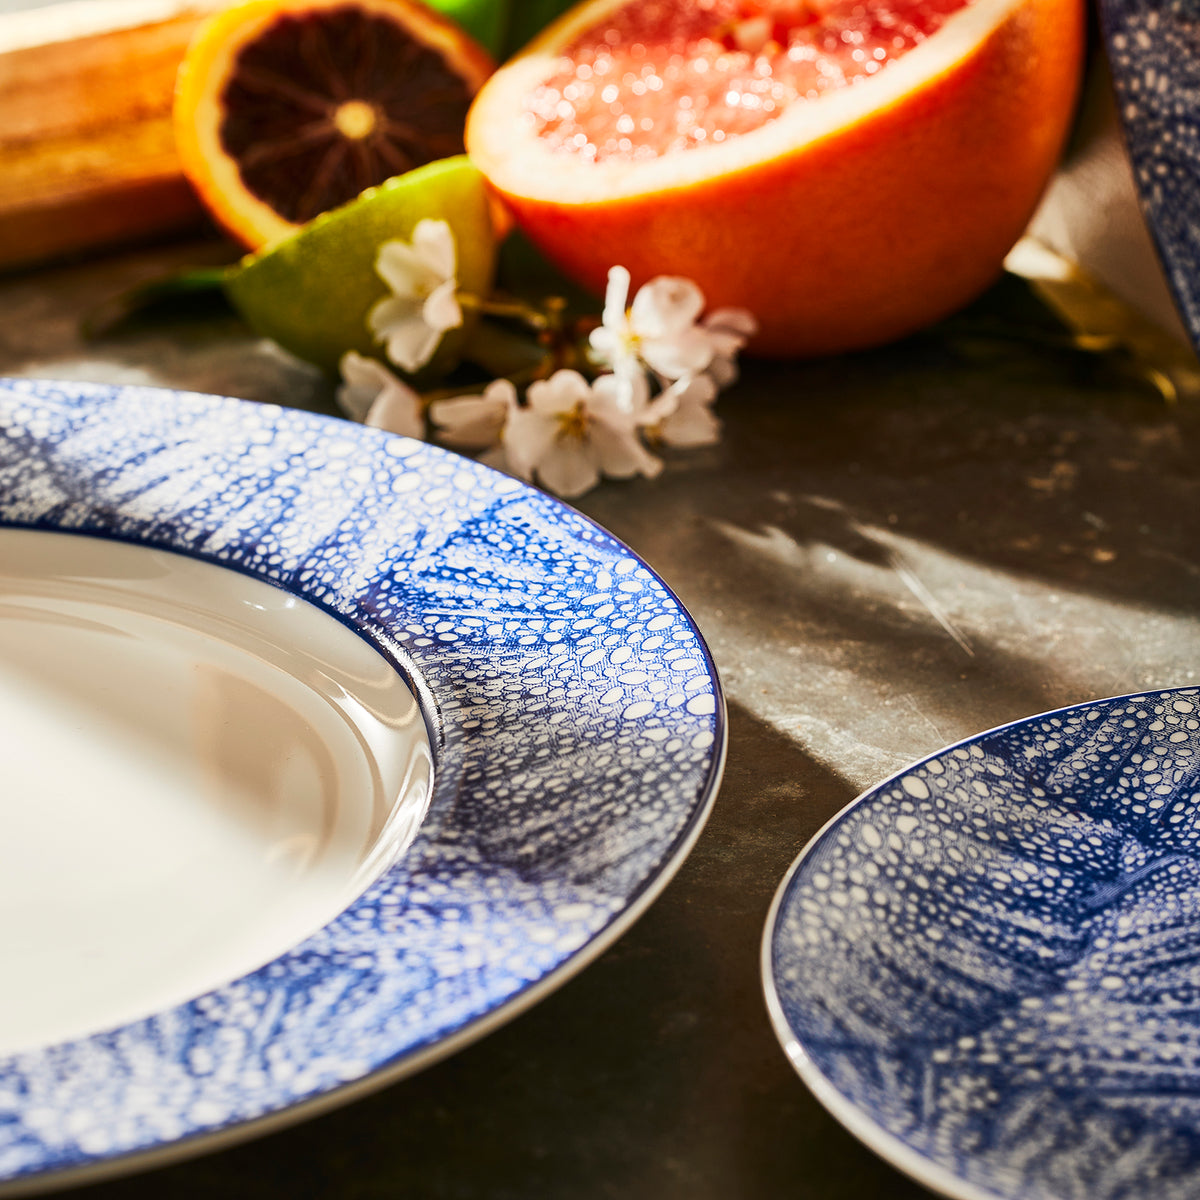 Sea Fan Rimmed Dinner Plate, blue and white premium porcelain from Caskata.